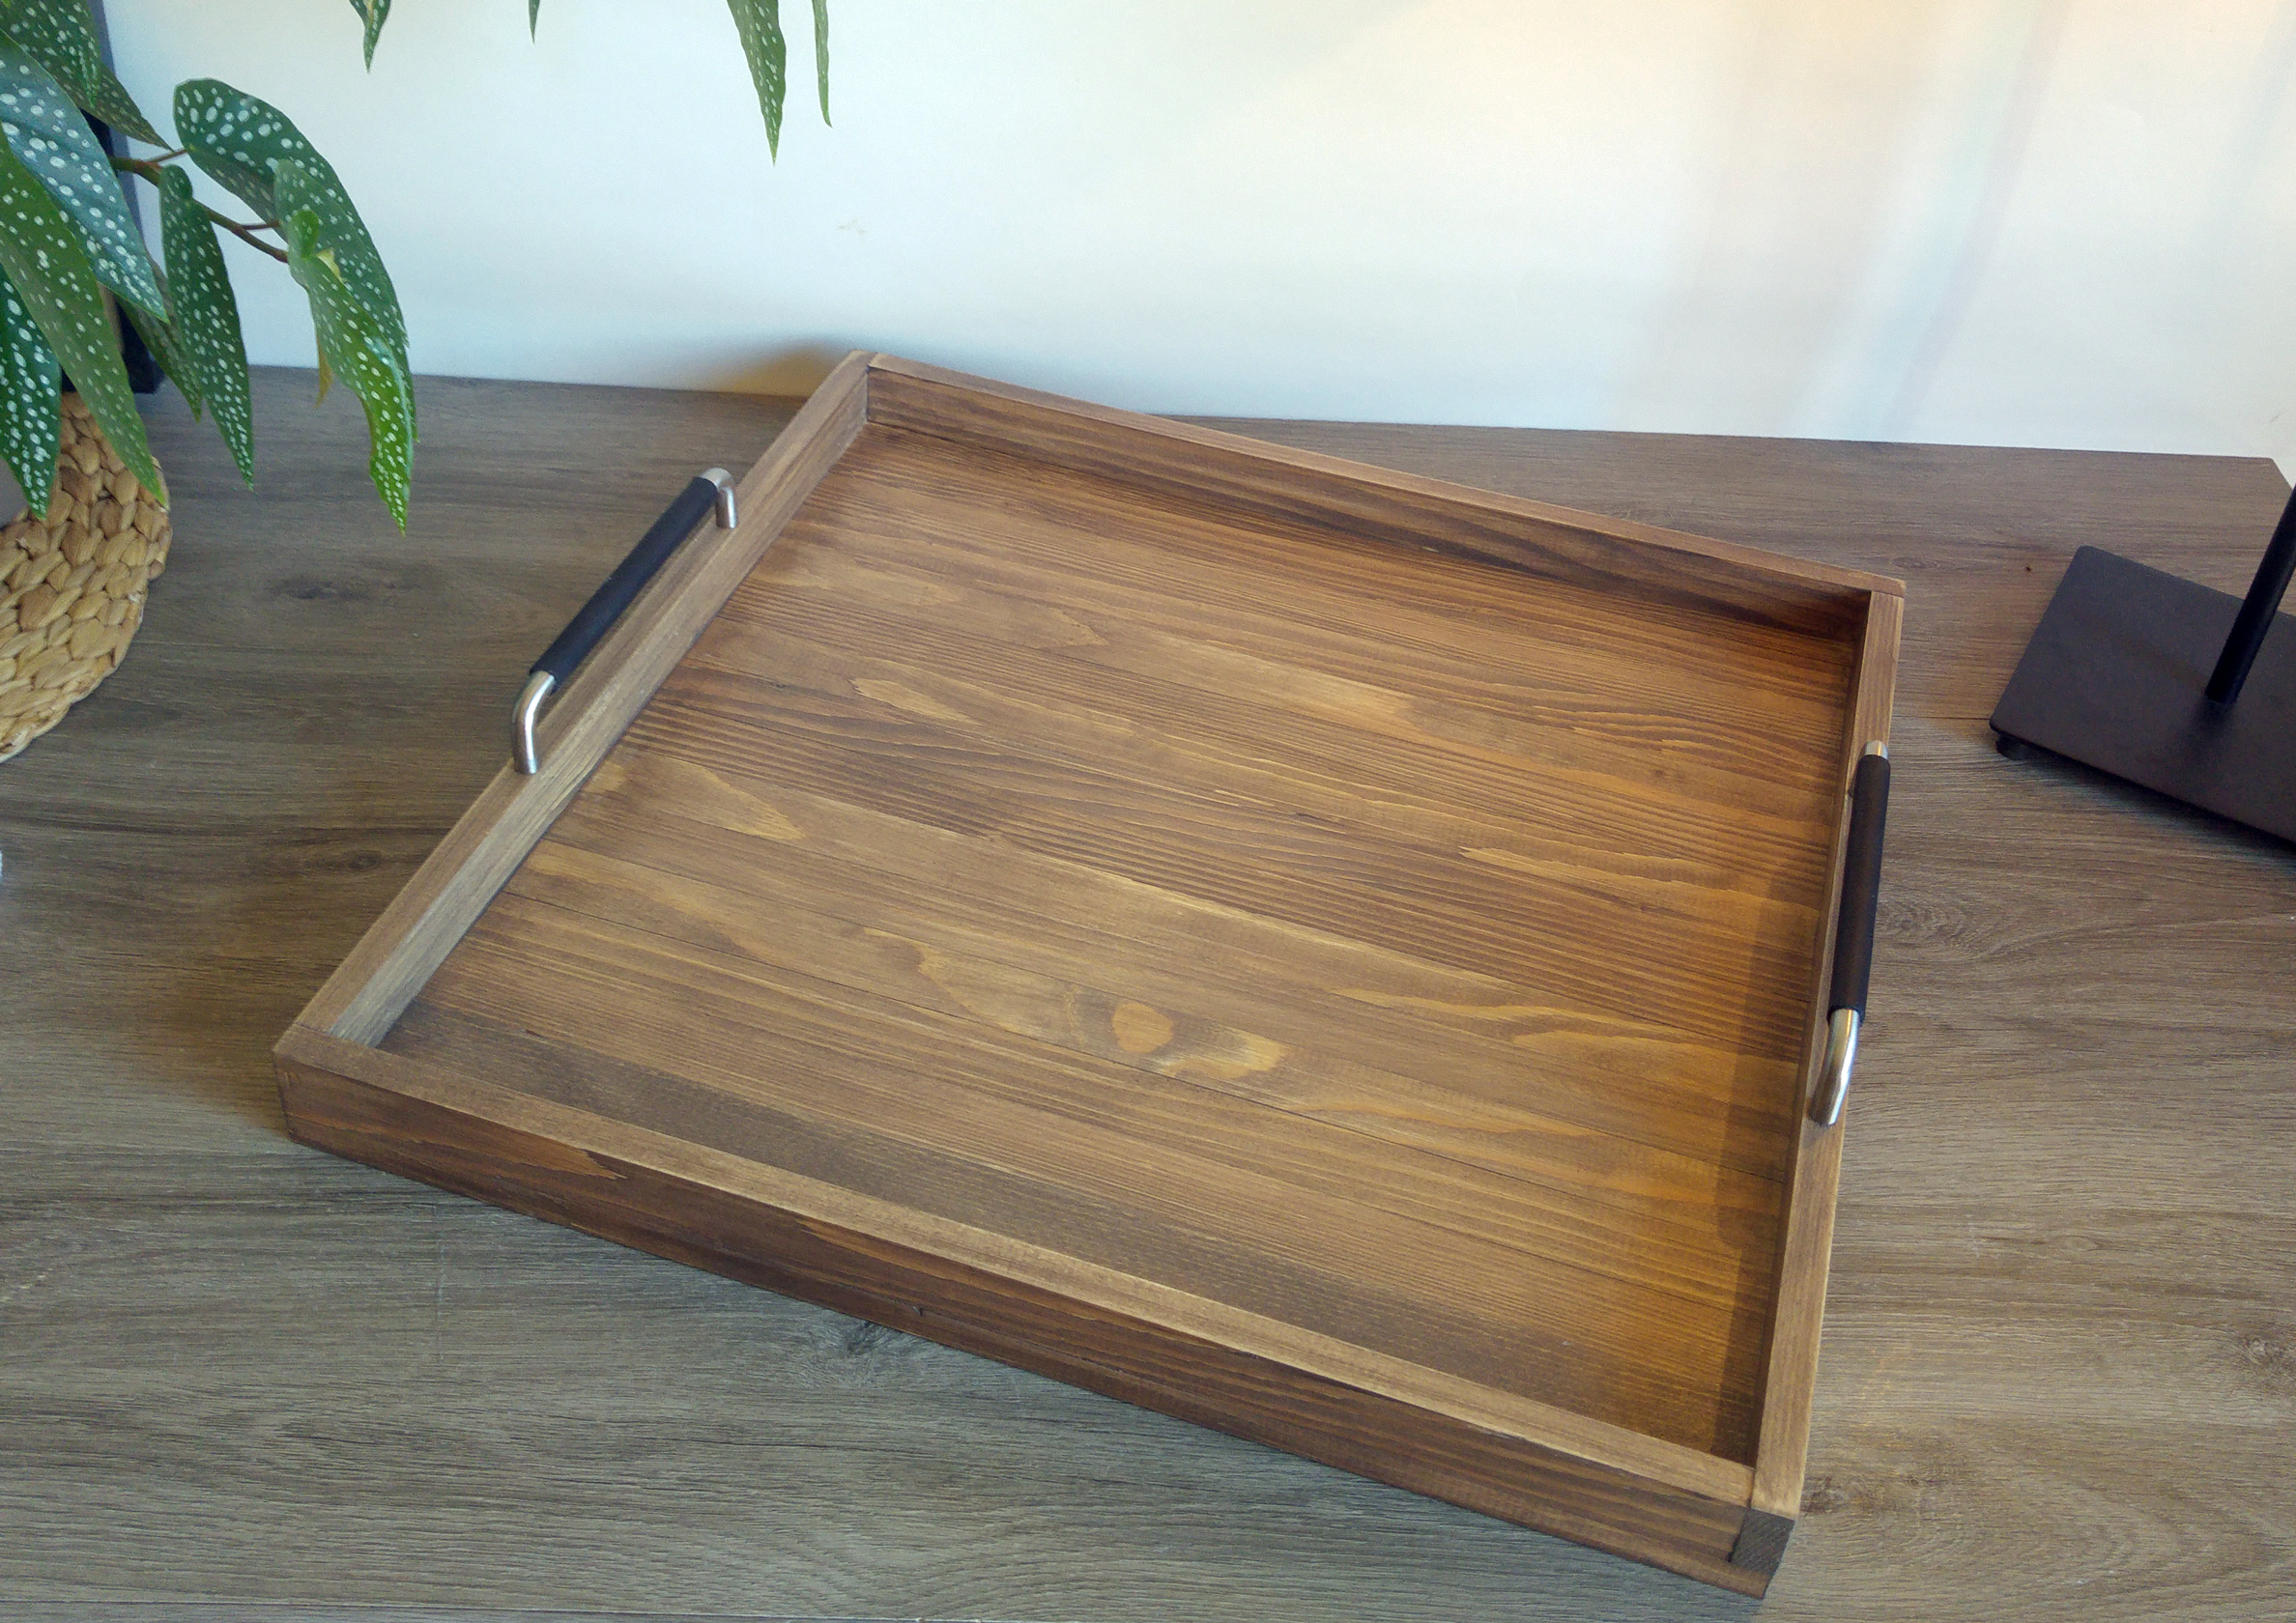 SUFEILE-plateaux en bois pour service de petit déj – Grandado